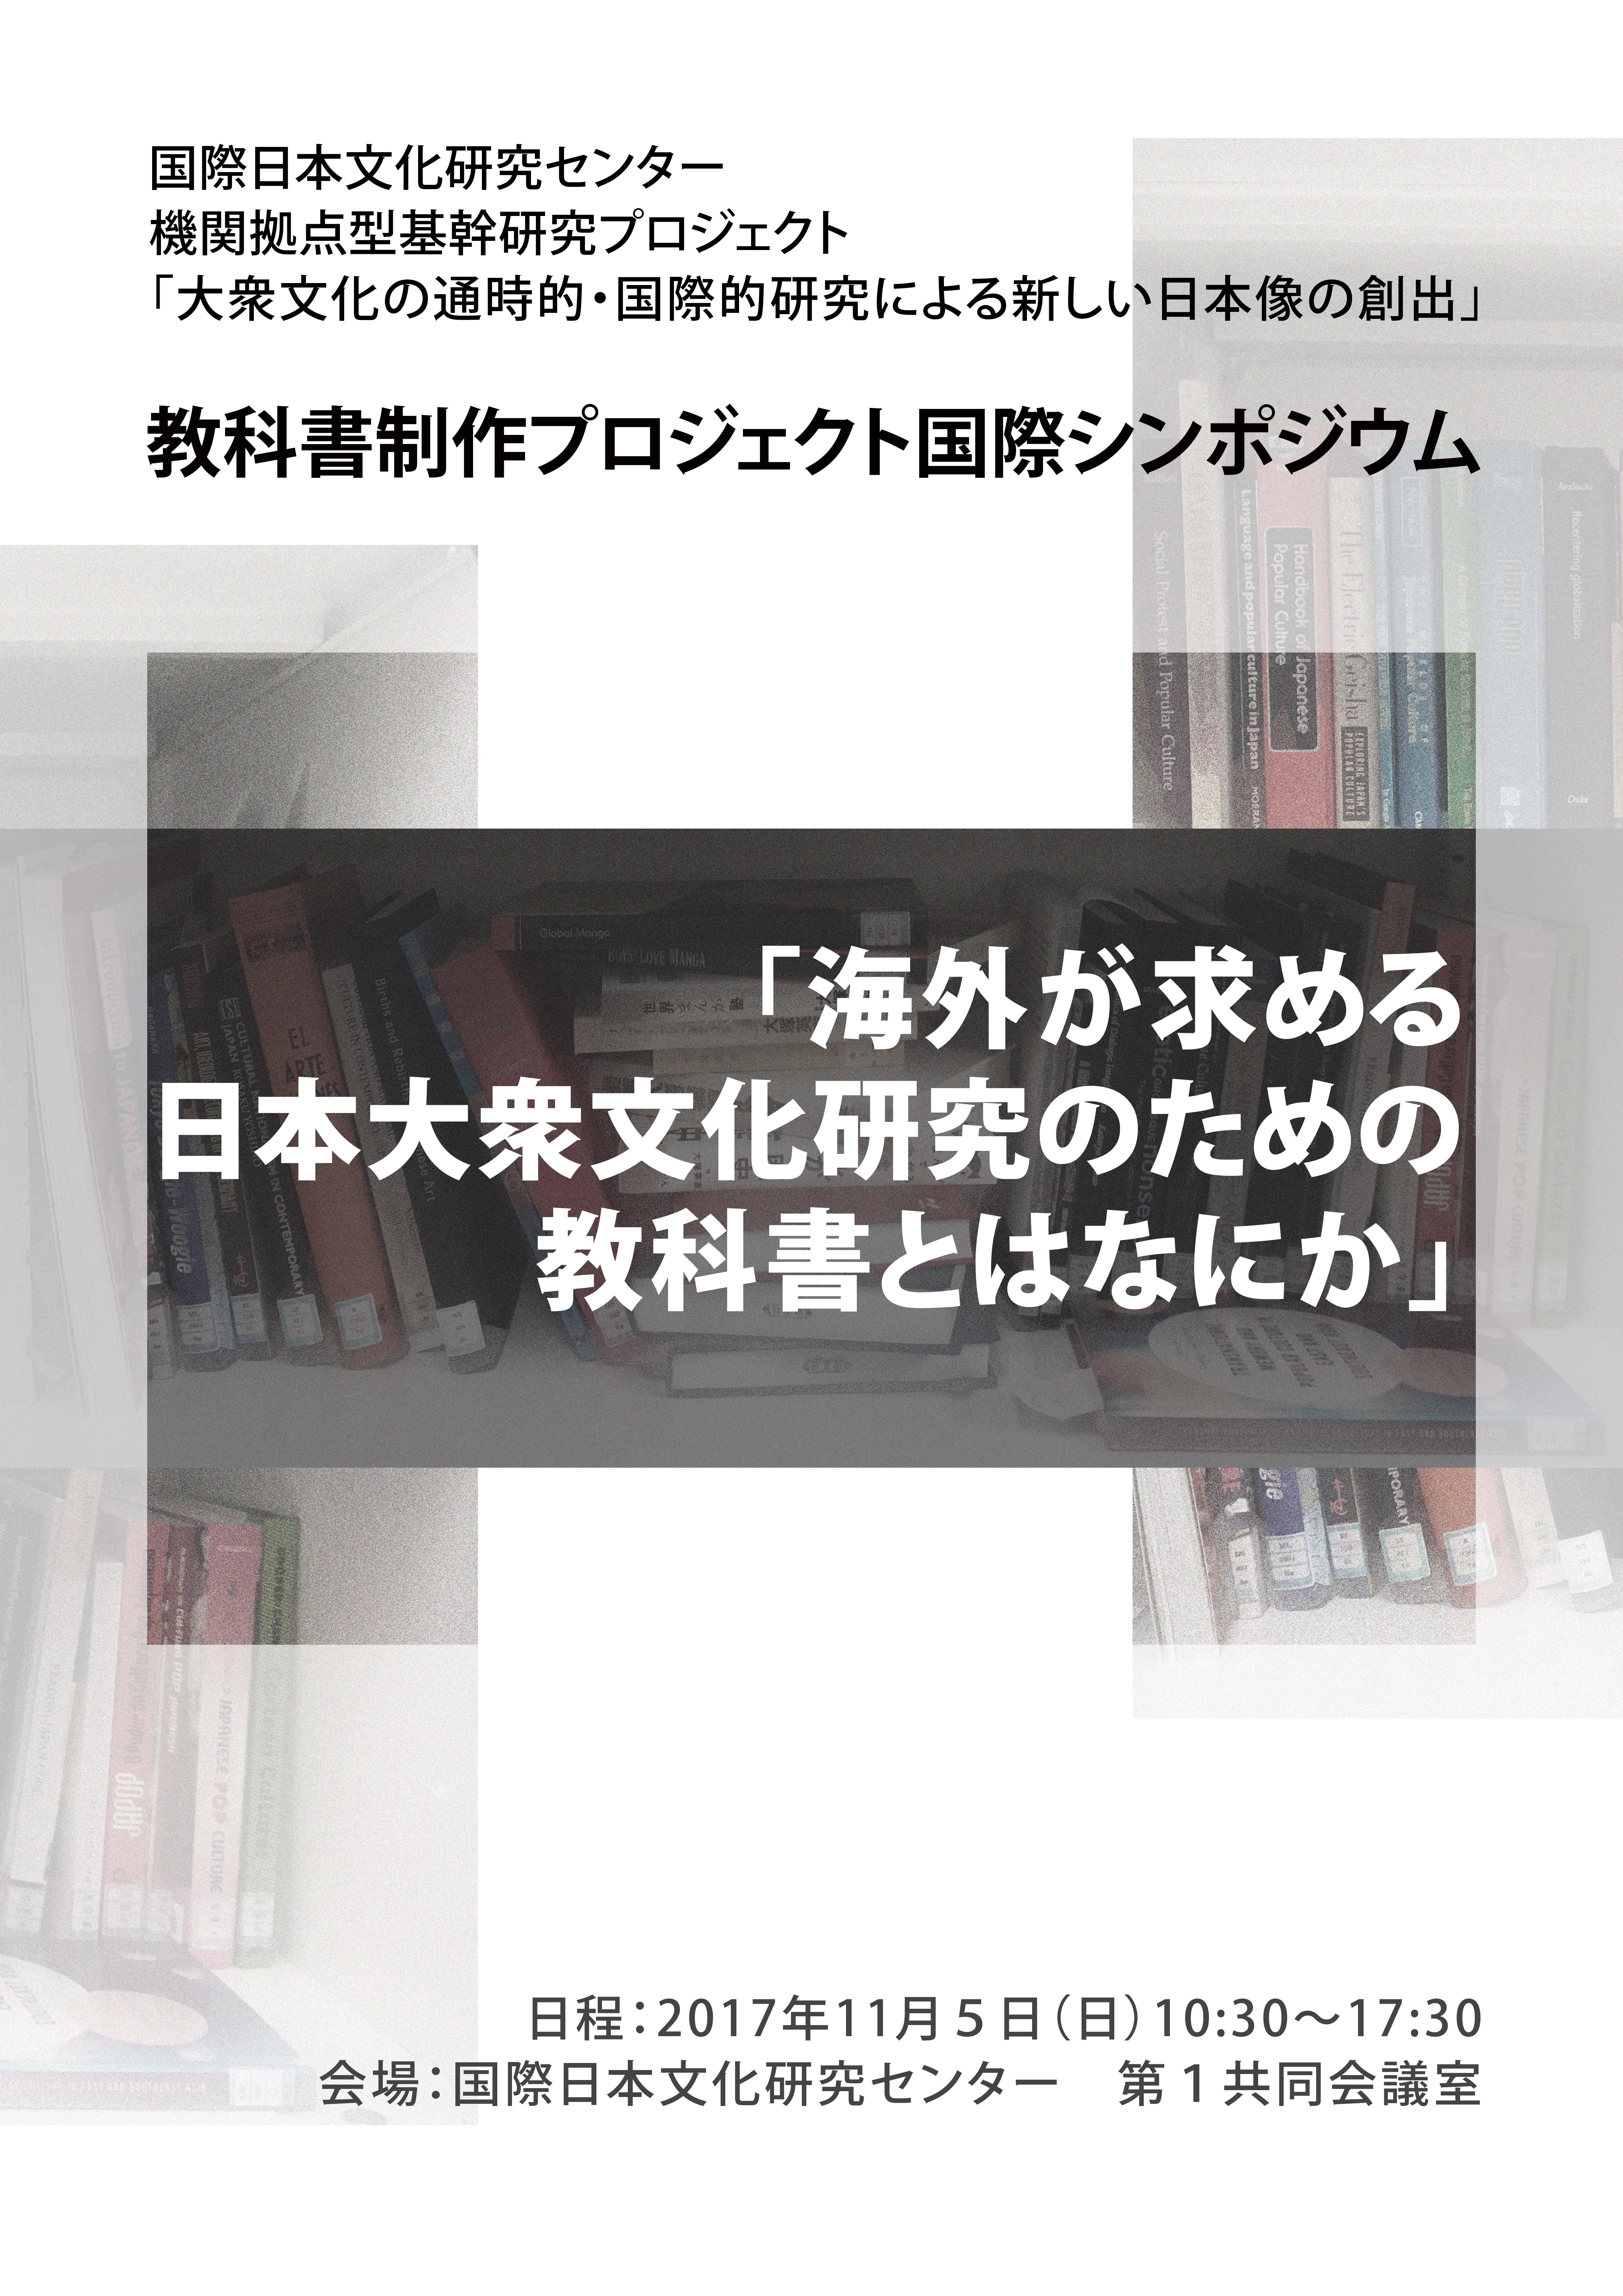 2017.11.5　教科書制作プロジェクト国際シンポジウム 「海外が求める日本大衆文化研究のための教科書とはなにか」